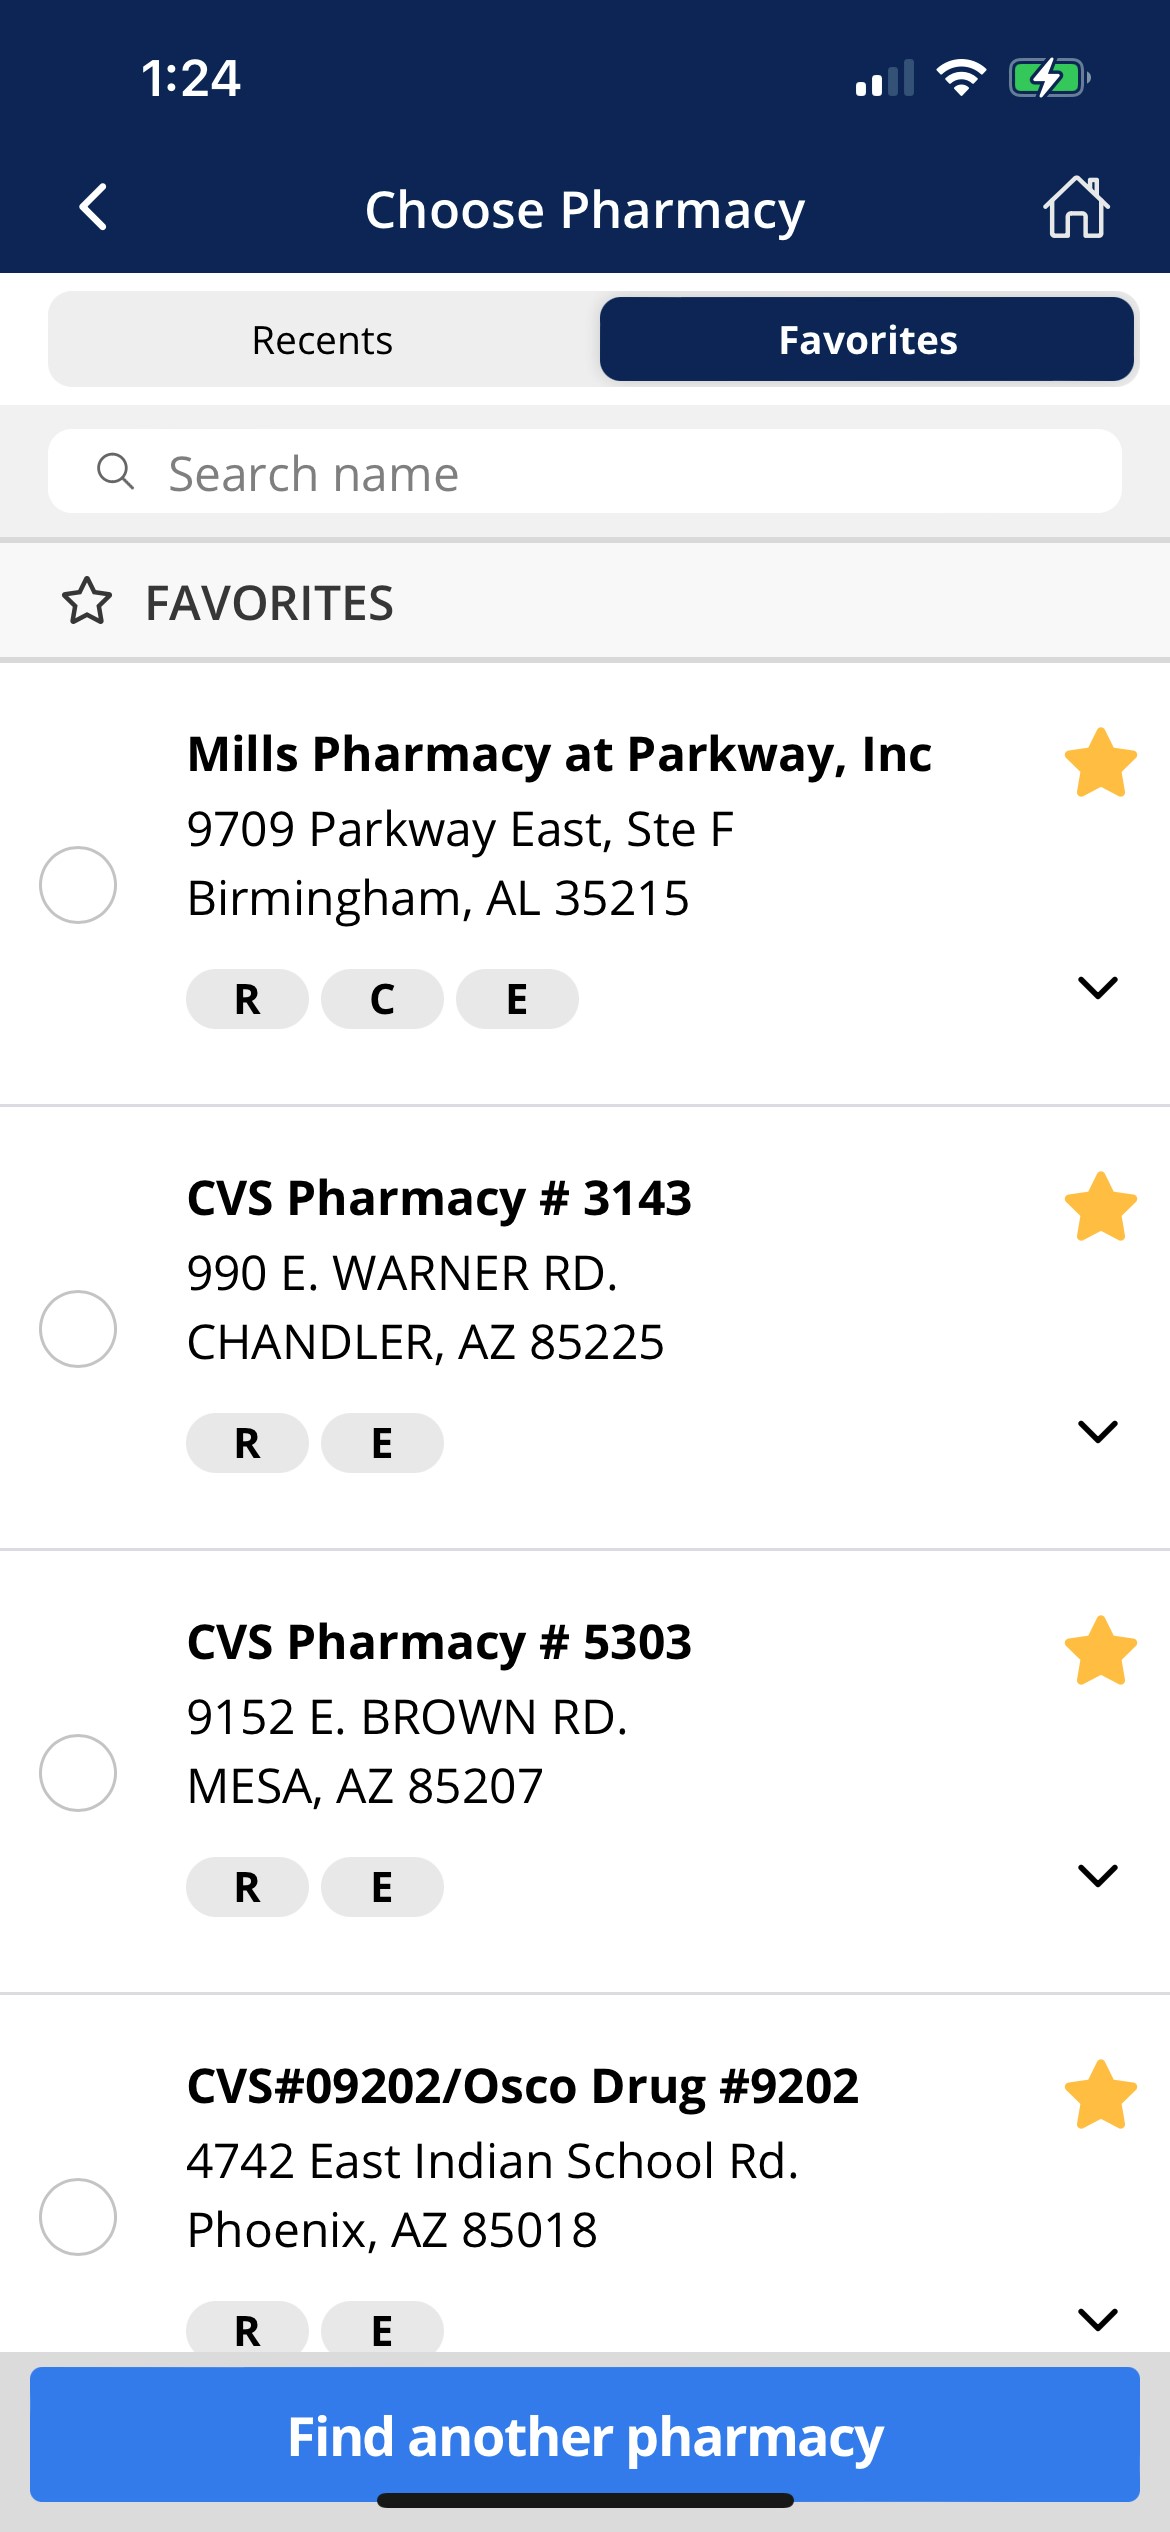 Pharmacy_Favorites.jpg